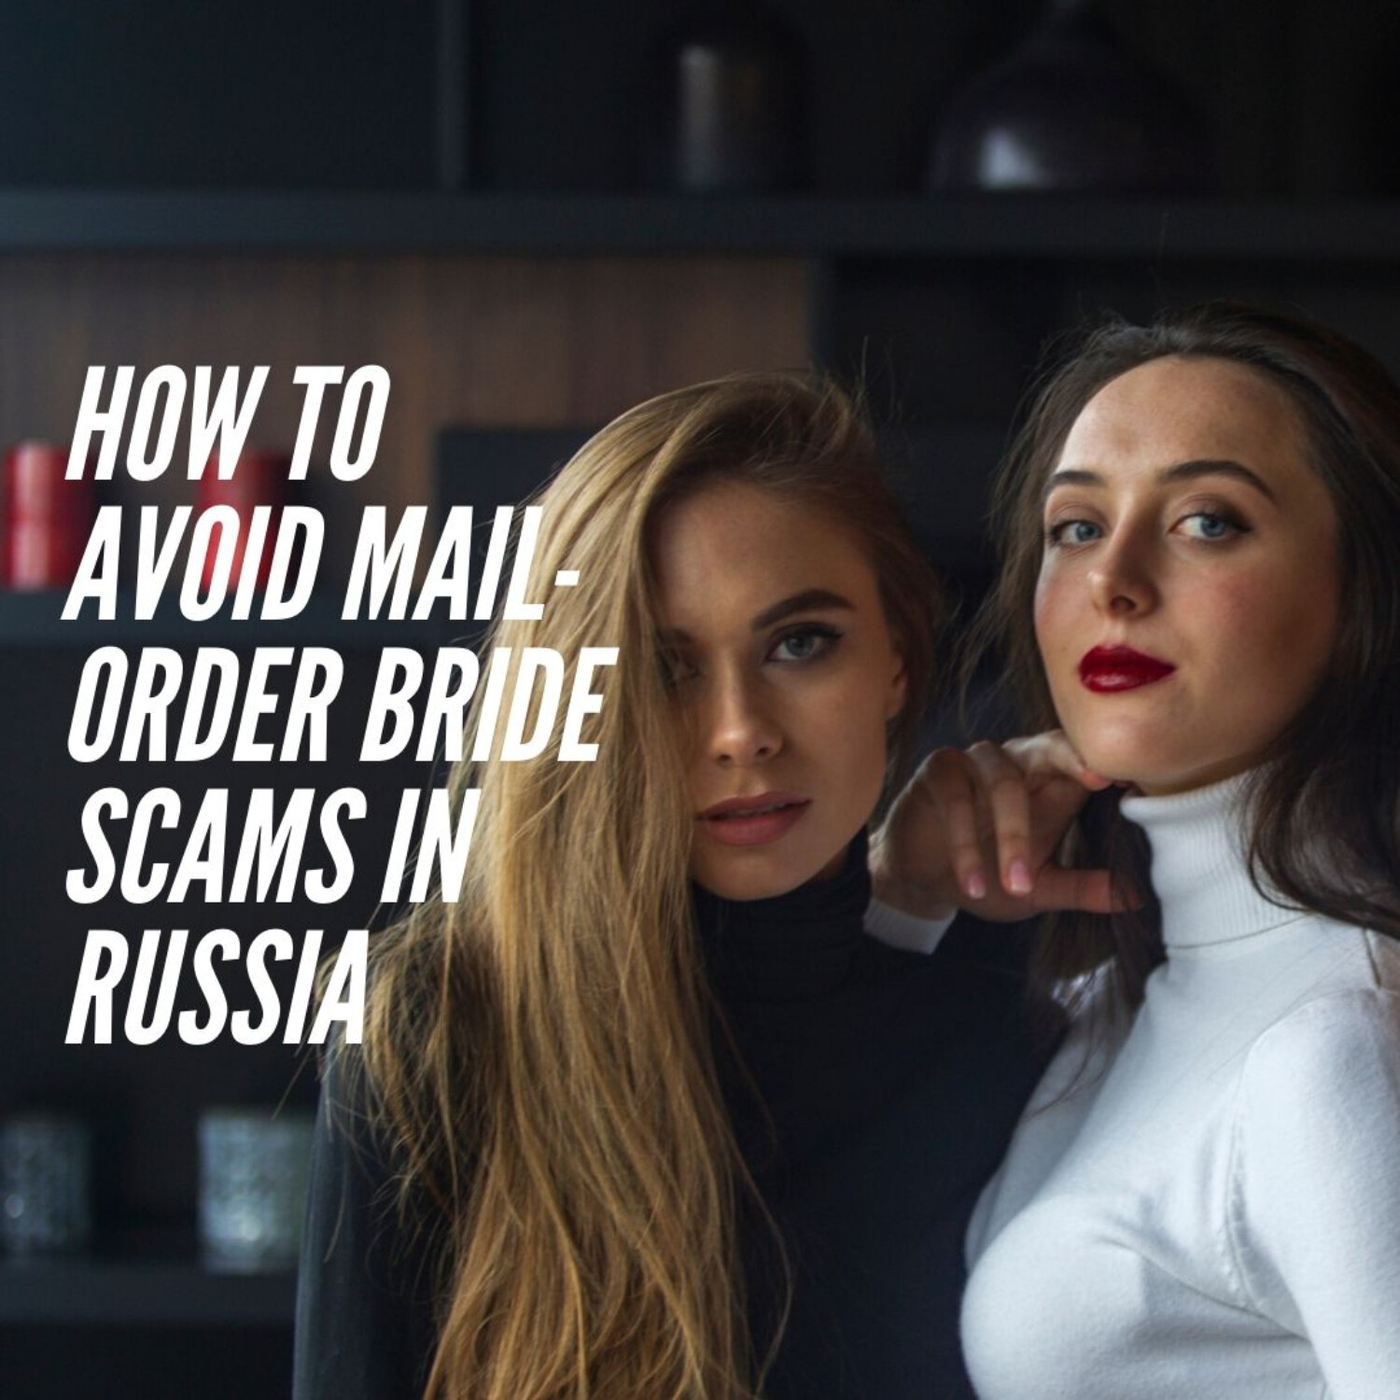 Russian Bride Scams Was